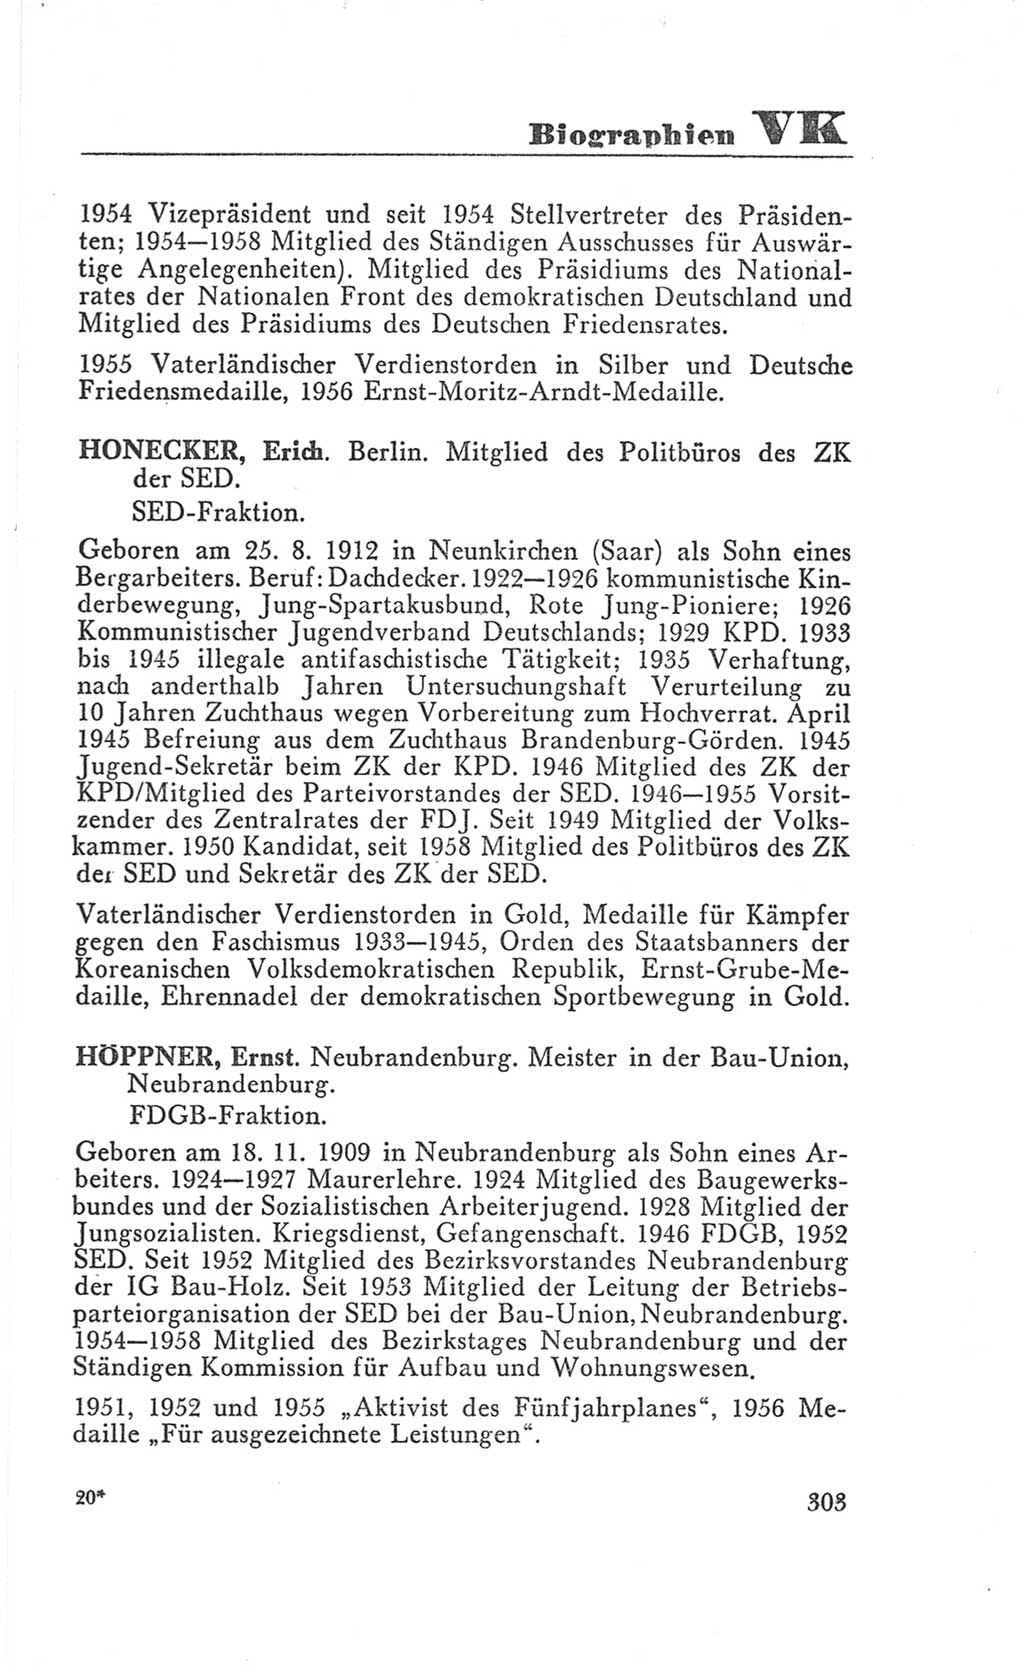 Handbuch der Volkskammer (VK) der Deutschen Demokratischen Republik (DDR), 3. Wahlperiode 1958-1963, Seite 303 (Hdb. VK. DDR 3. WP. 1958-1963, S. 303)